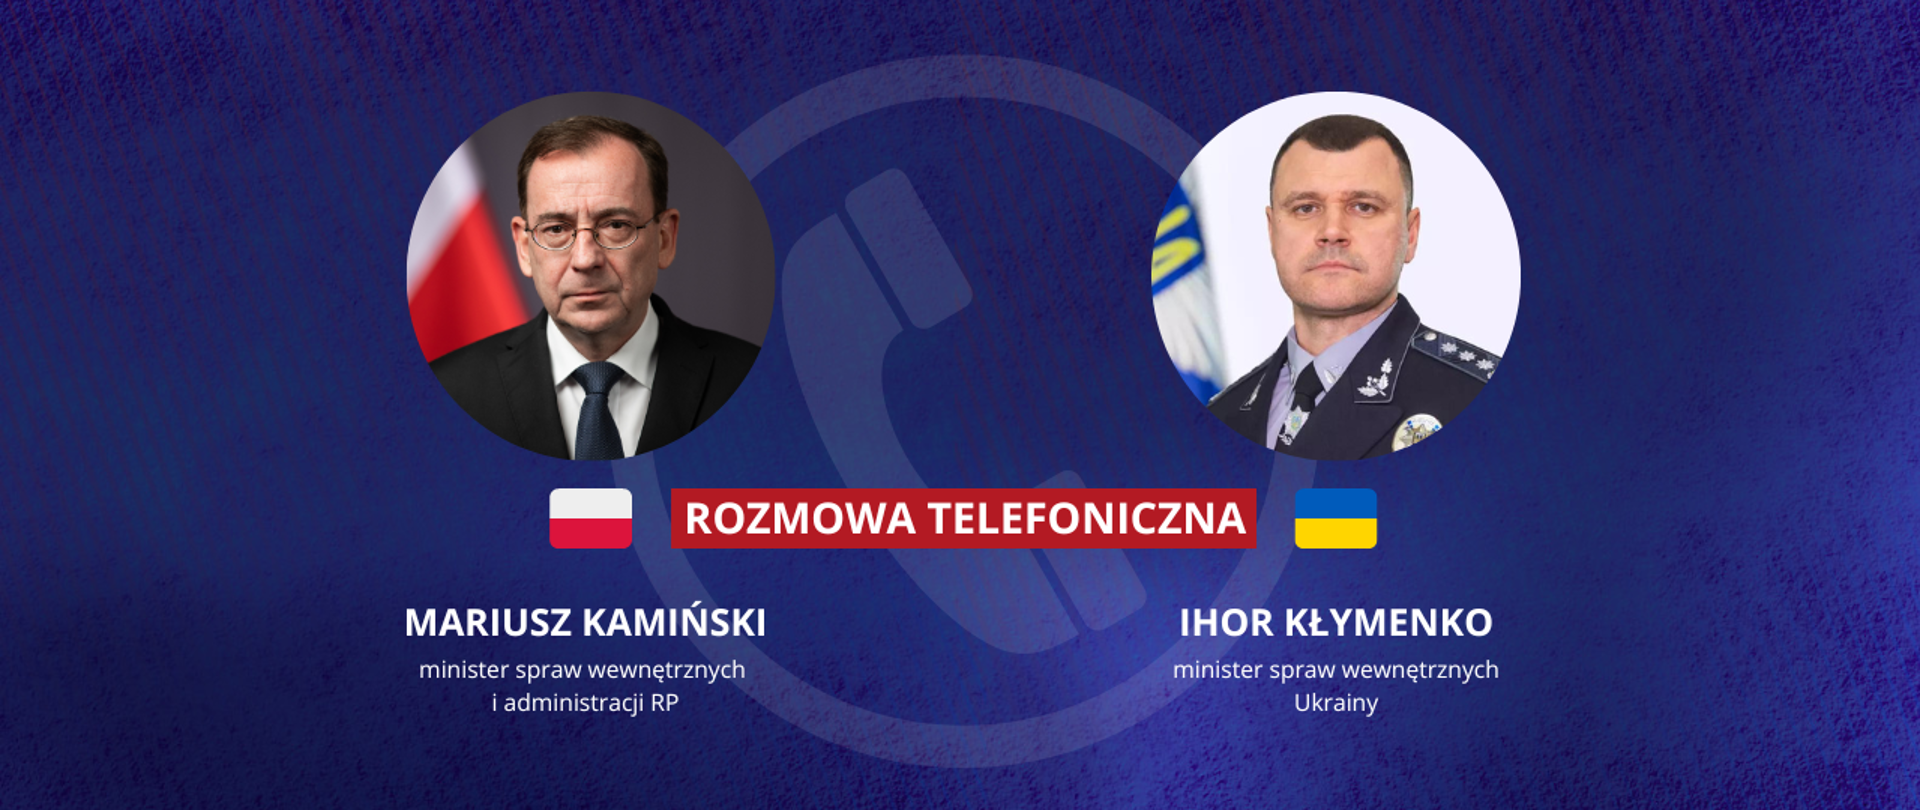 Rozmowa telefoniczna Mariusza Kamińskiego, ministra spraw wewnętrznych i administracji RP z Ihorem Kłymenko, ministrem spraw wewnętrznych Ukrainy. 